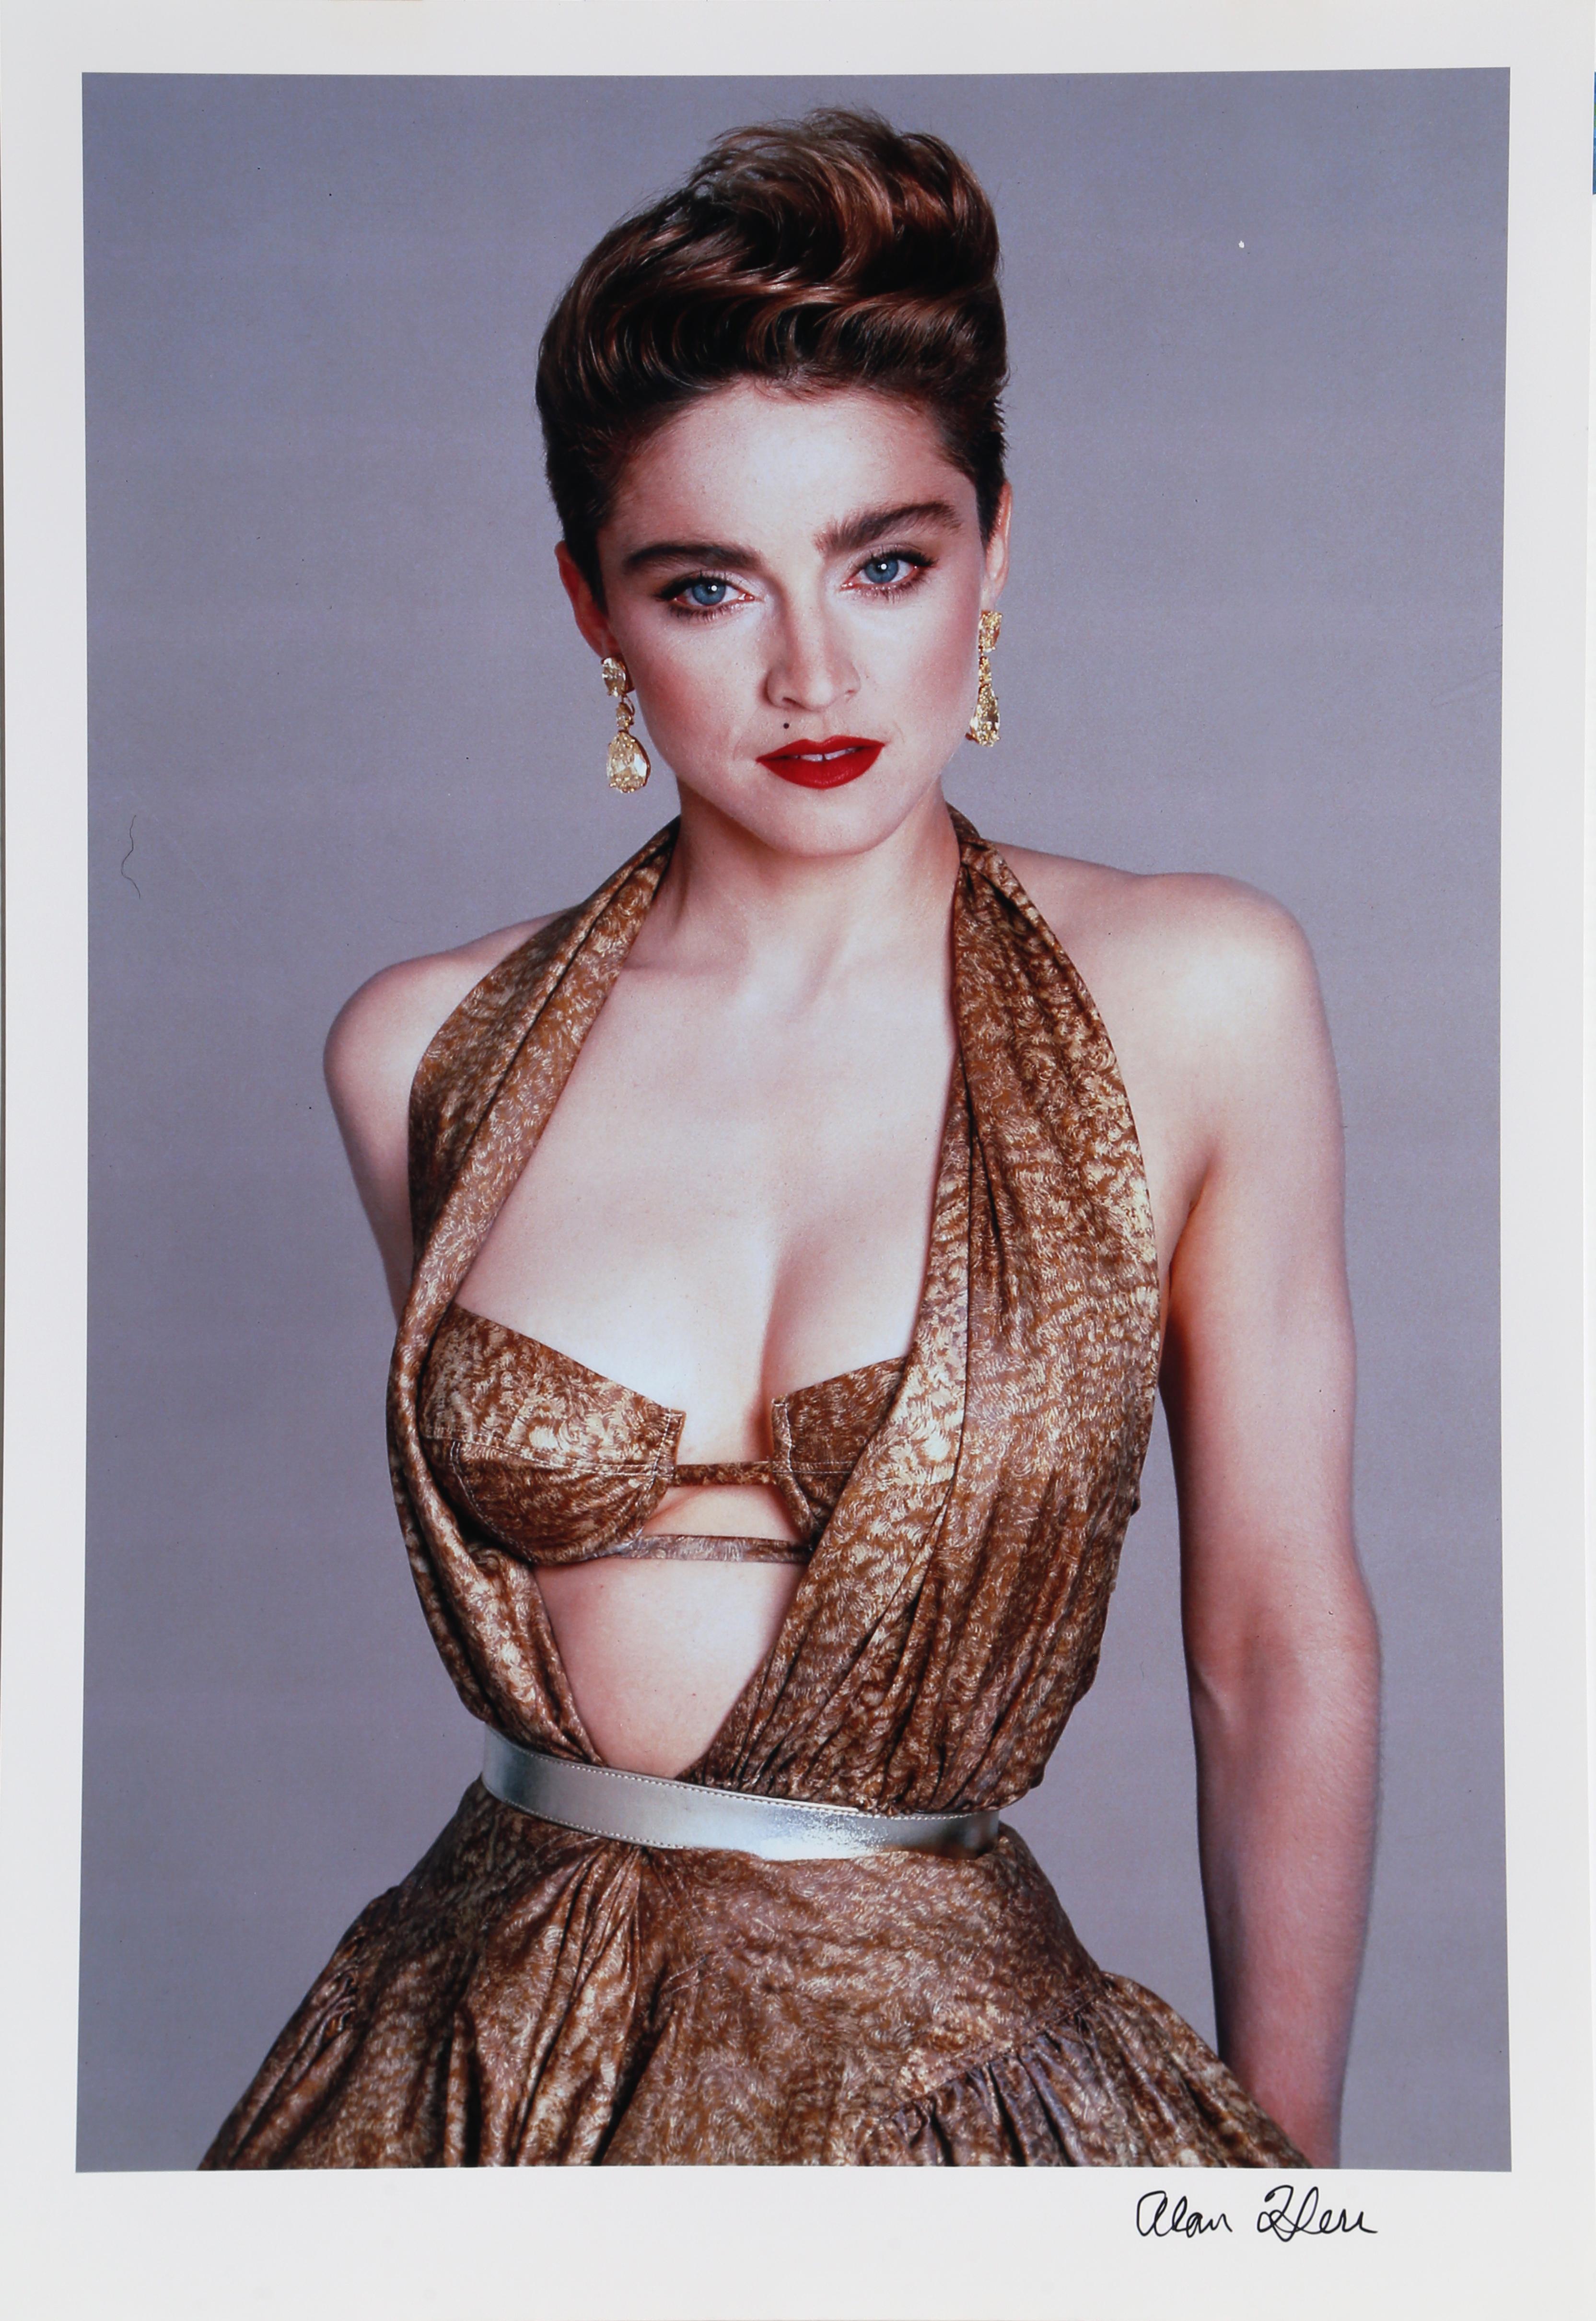 Alan Herr Portrait Photograph - Portrait of Madonna